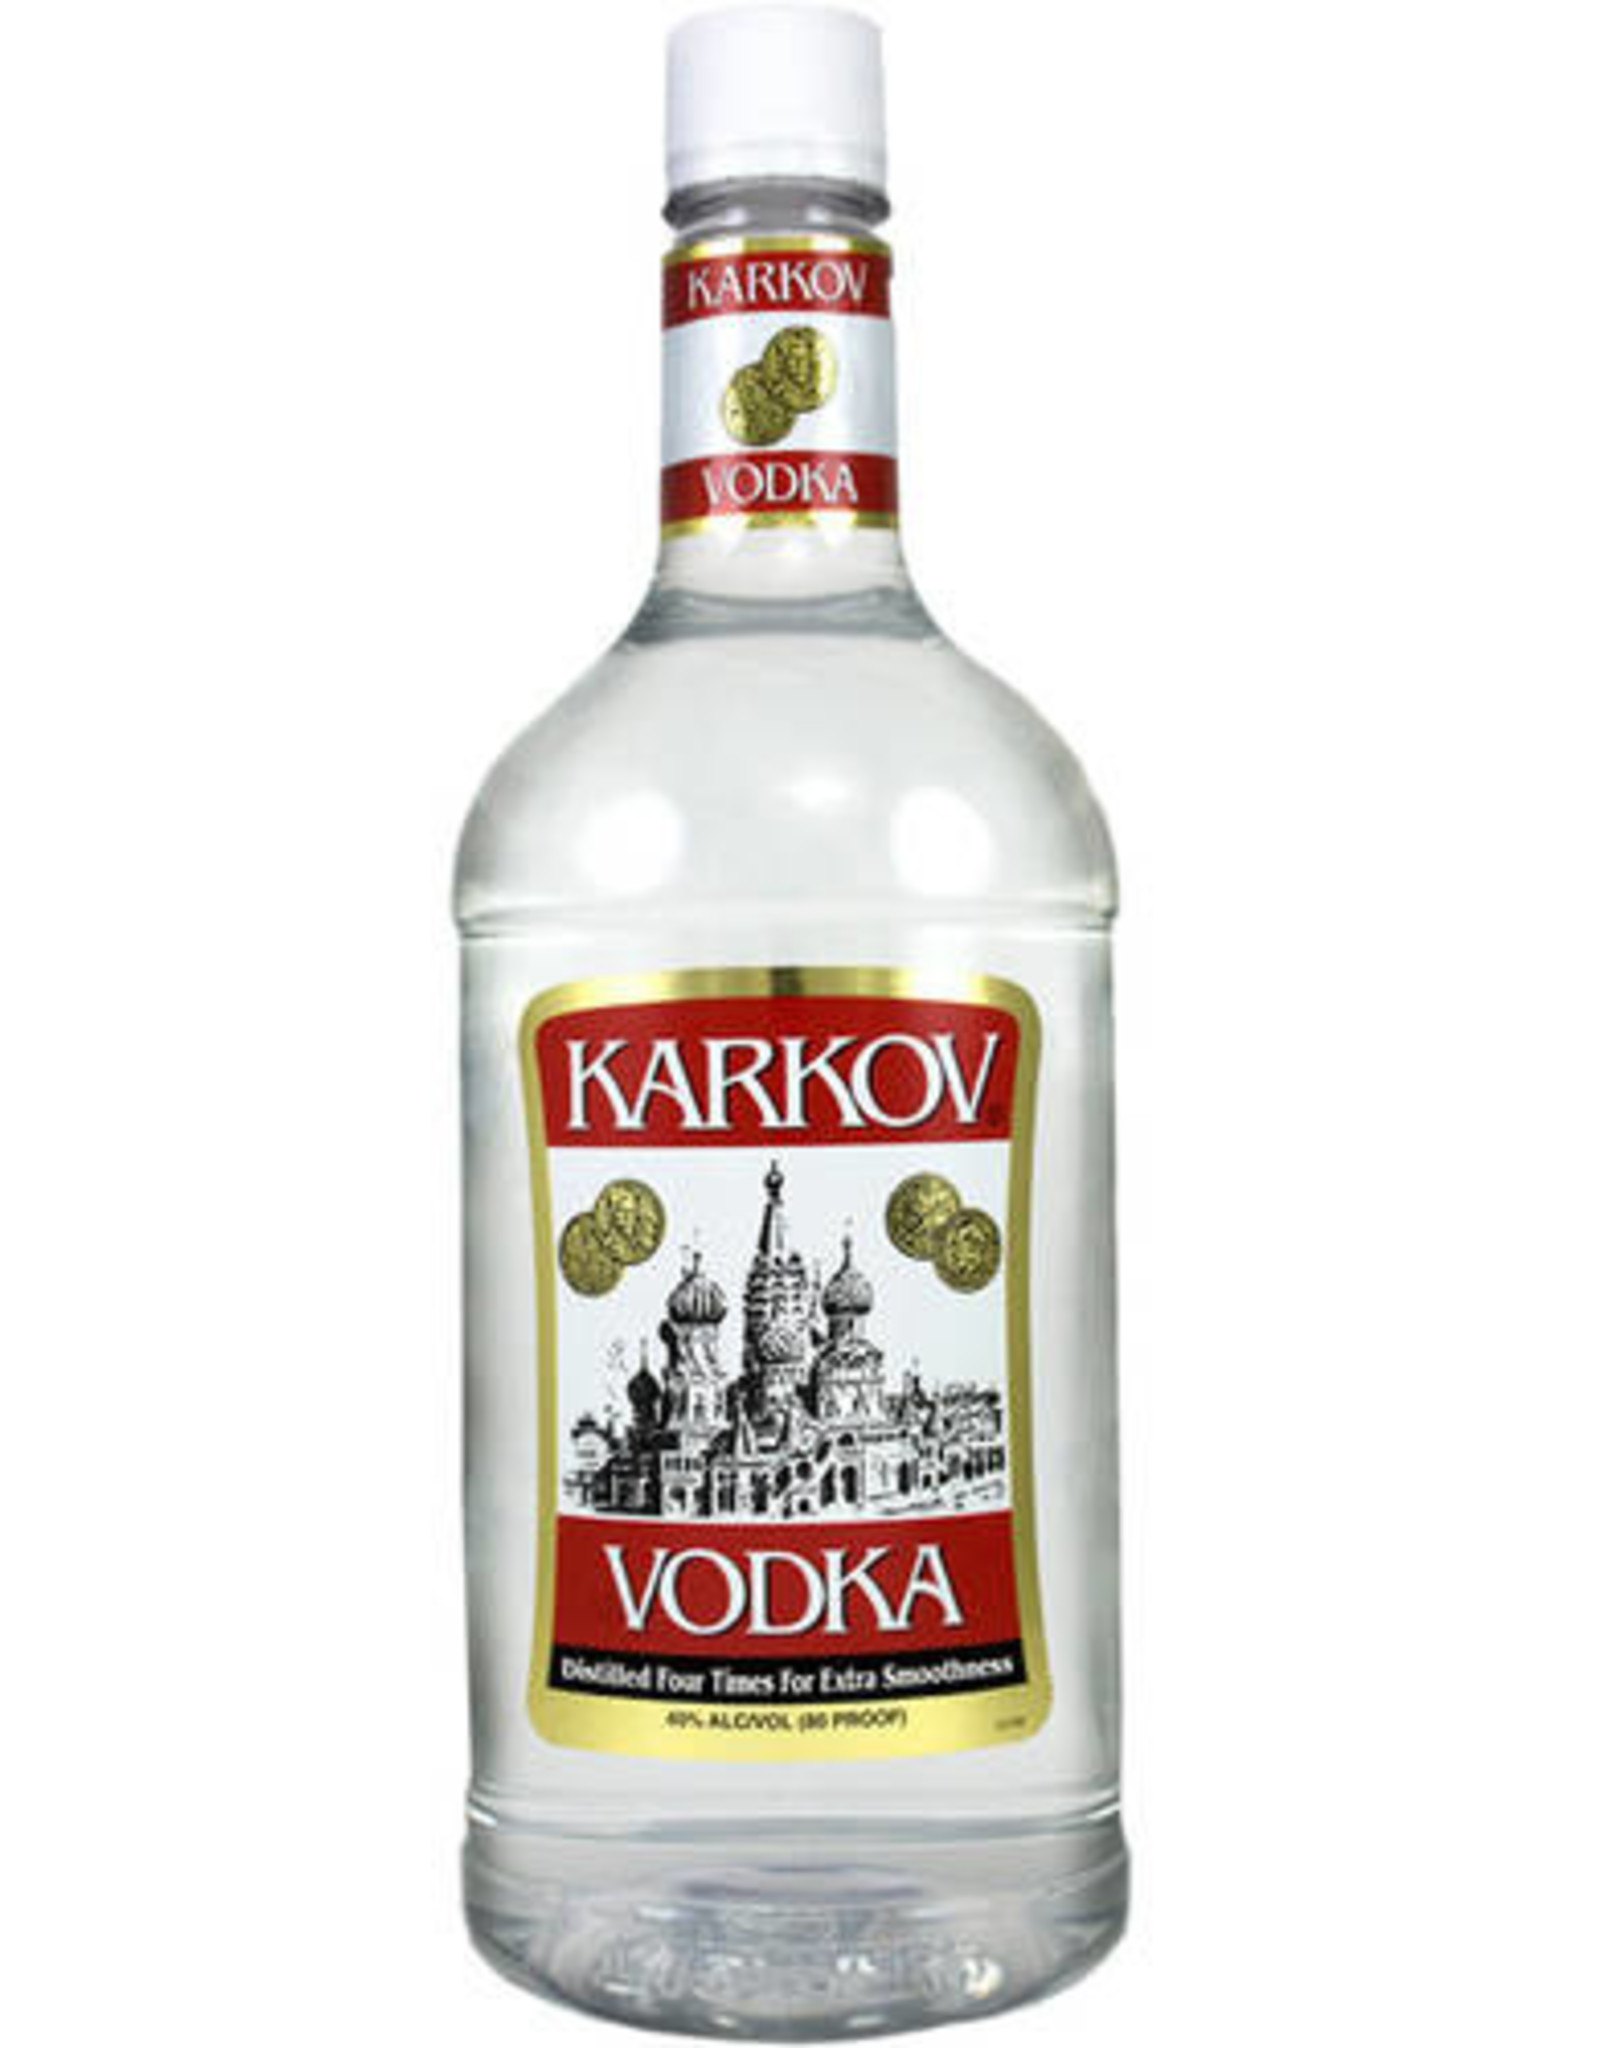 Karkov Vodka 80 1.75L